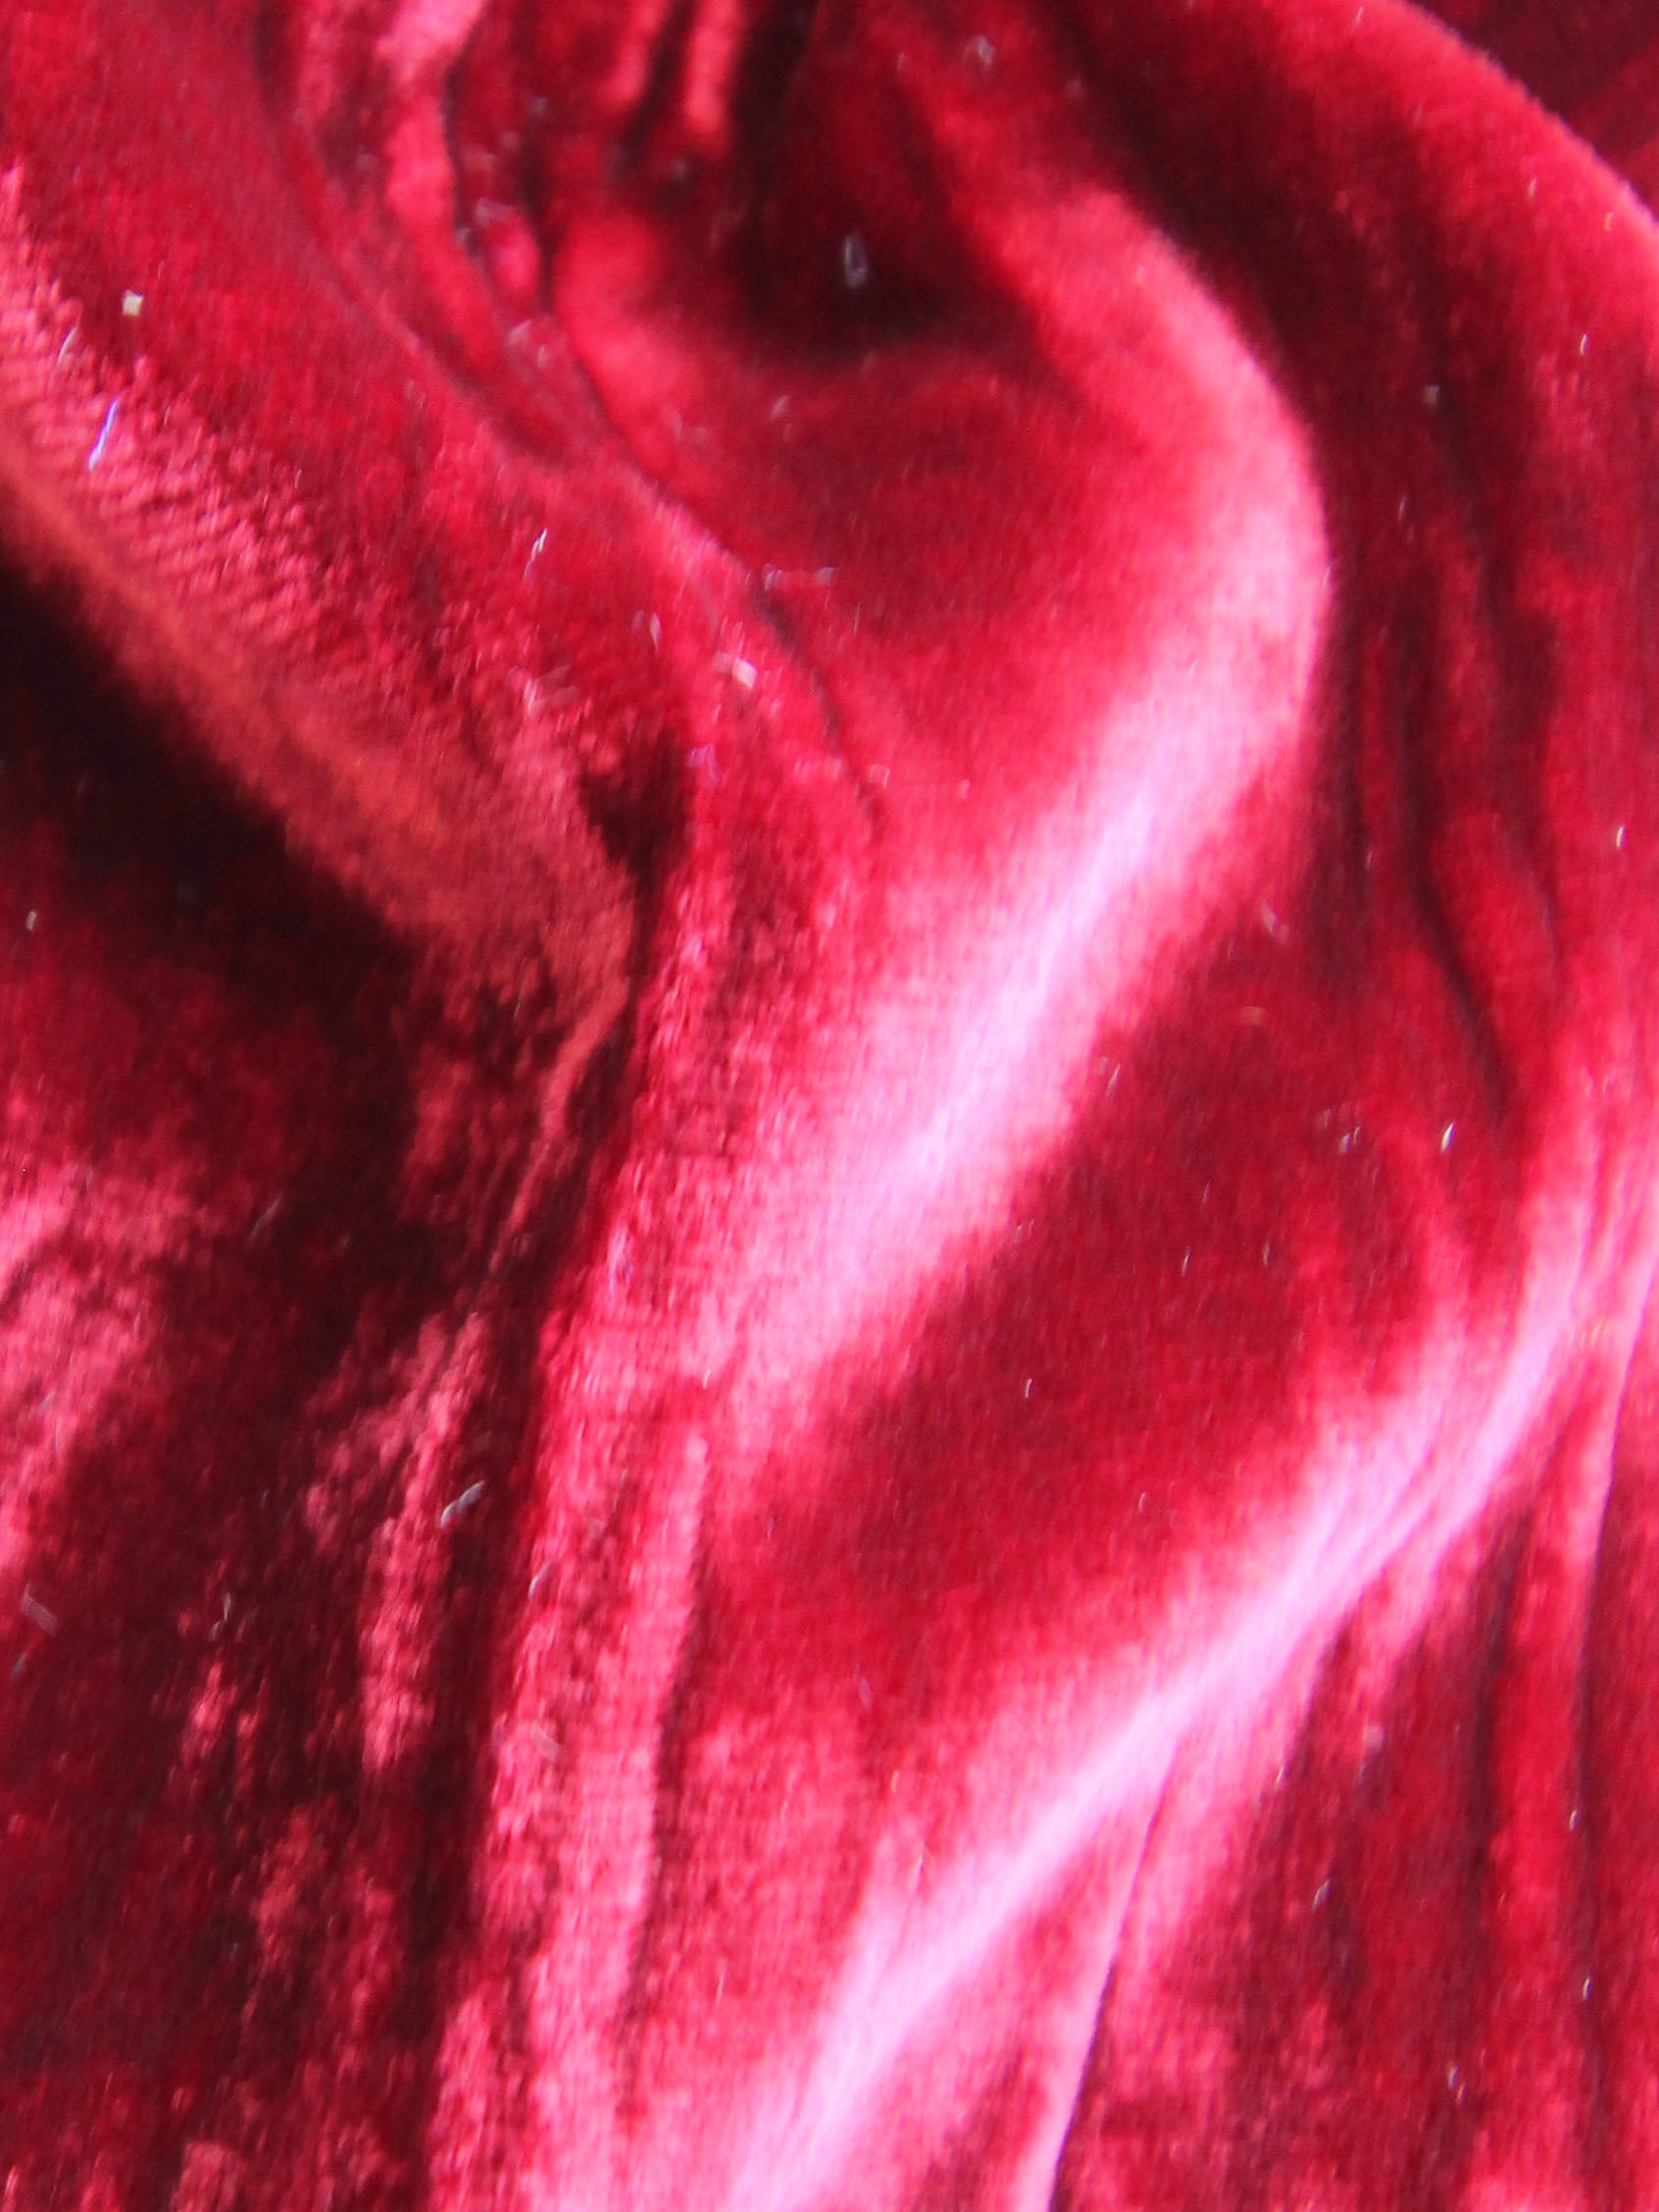 Red Panne Velvet Fabric